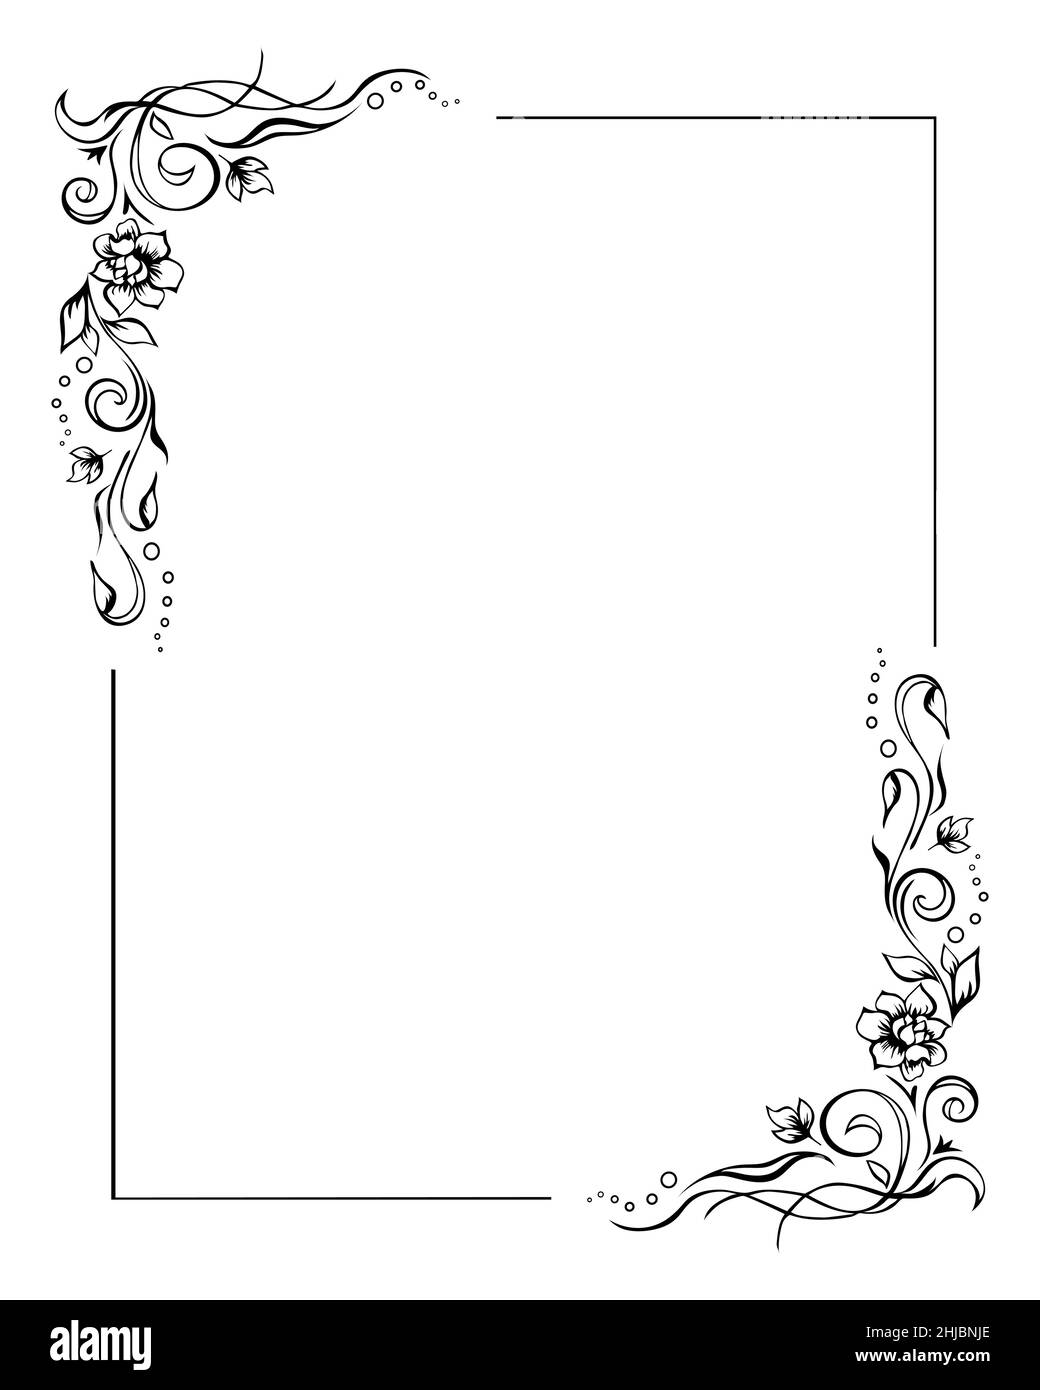 Marco floral rectangular, plantilla con borde de rosa con detalles en dos esquinas. Elegantes elementos decorativos dibujados a mano, follaje y flores. Editable Ilustración del Vector